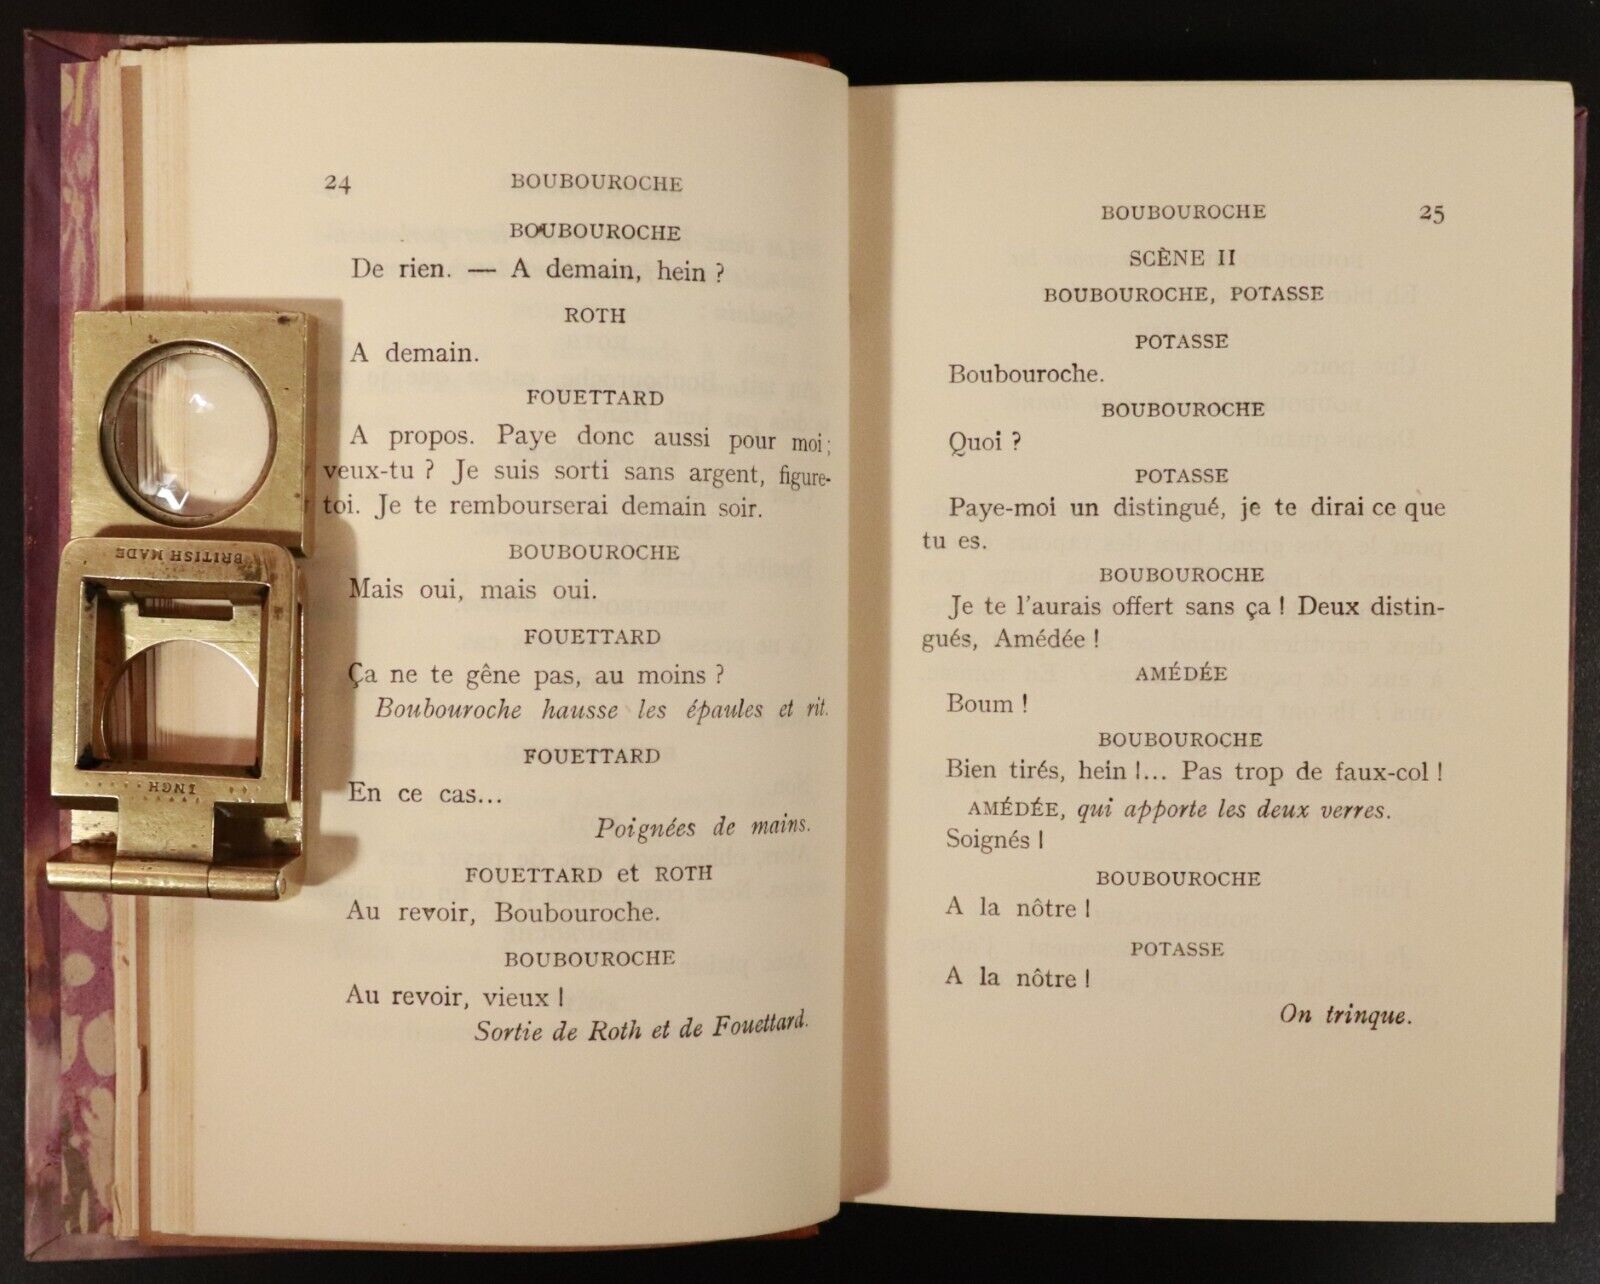 1929 11vol Ouvrages De Georges Courteline Antique Fiction Books Fine Binding